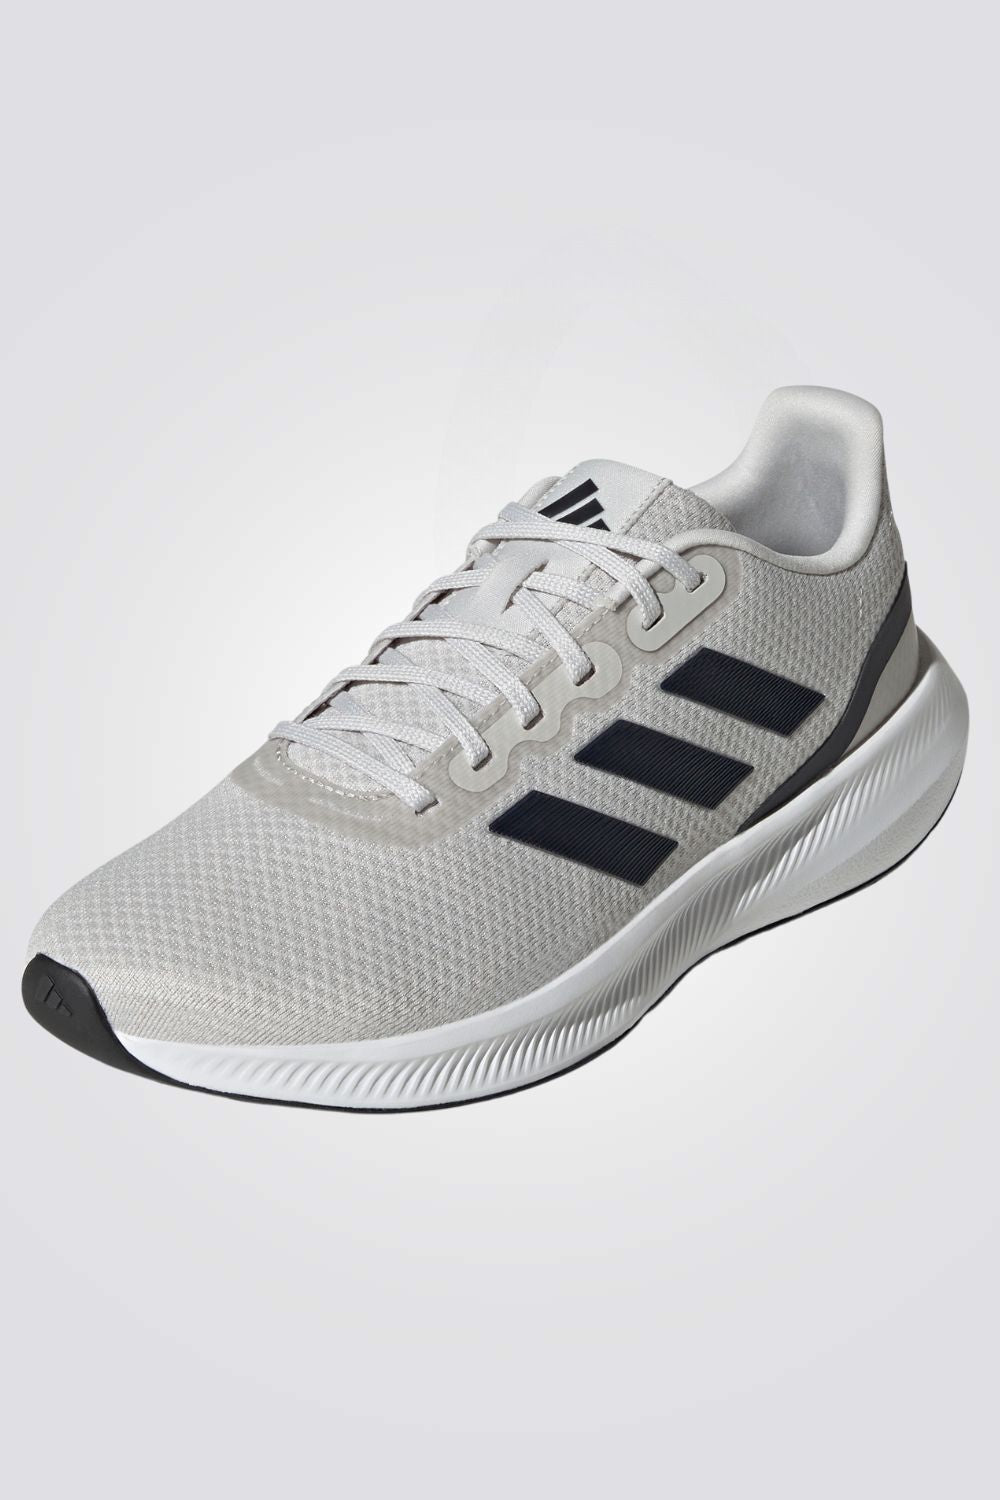 נעלי ספורט לגברים RUNFALCON 3.0 בצבע אפור לבן ושחור